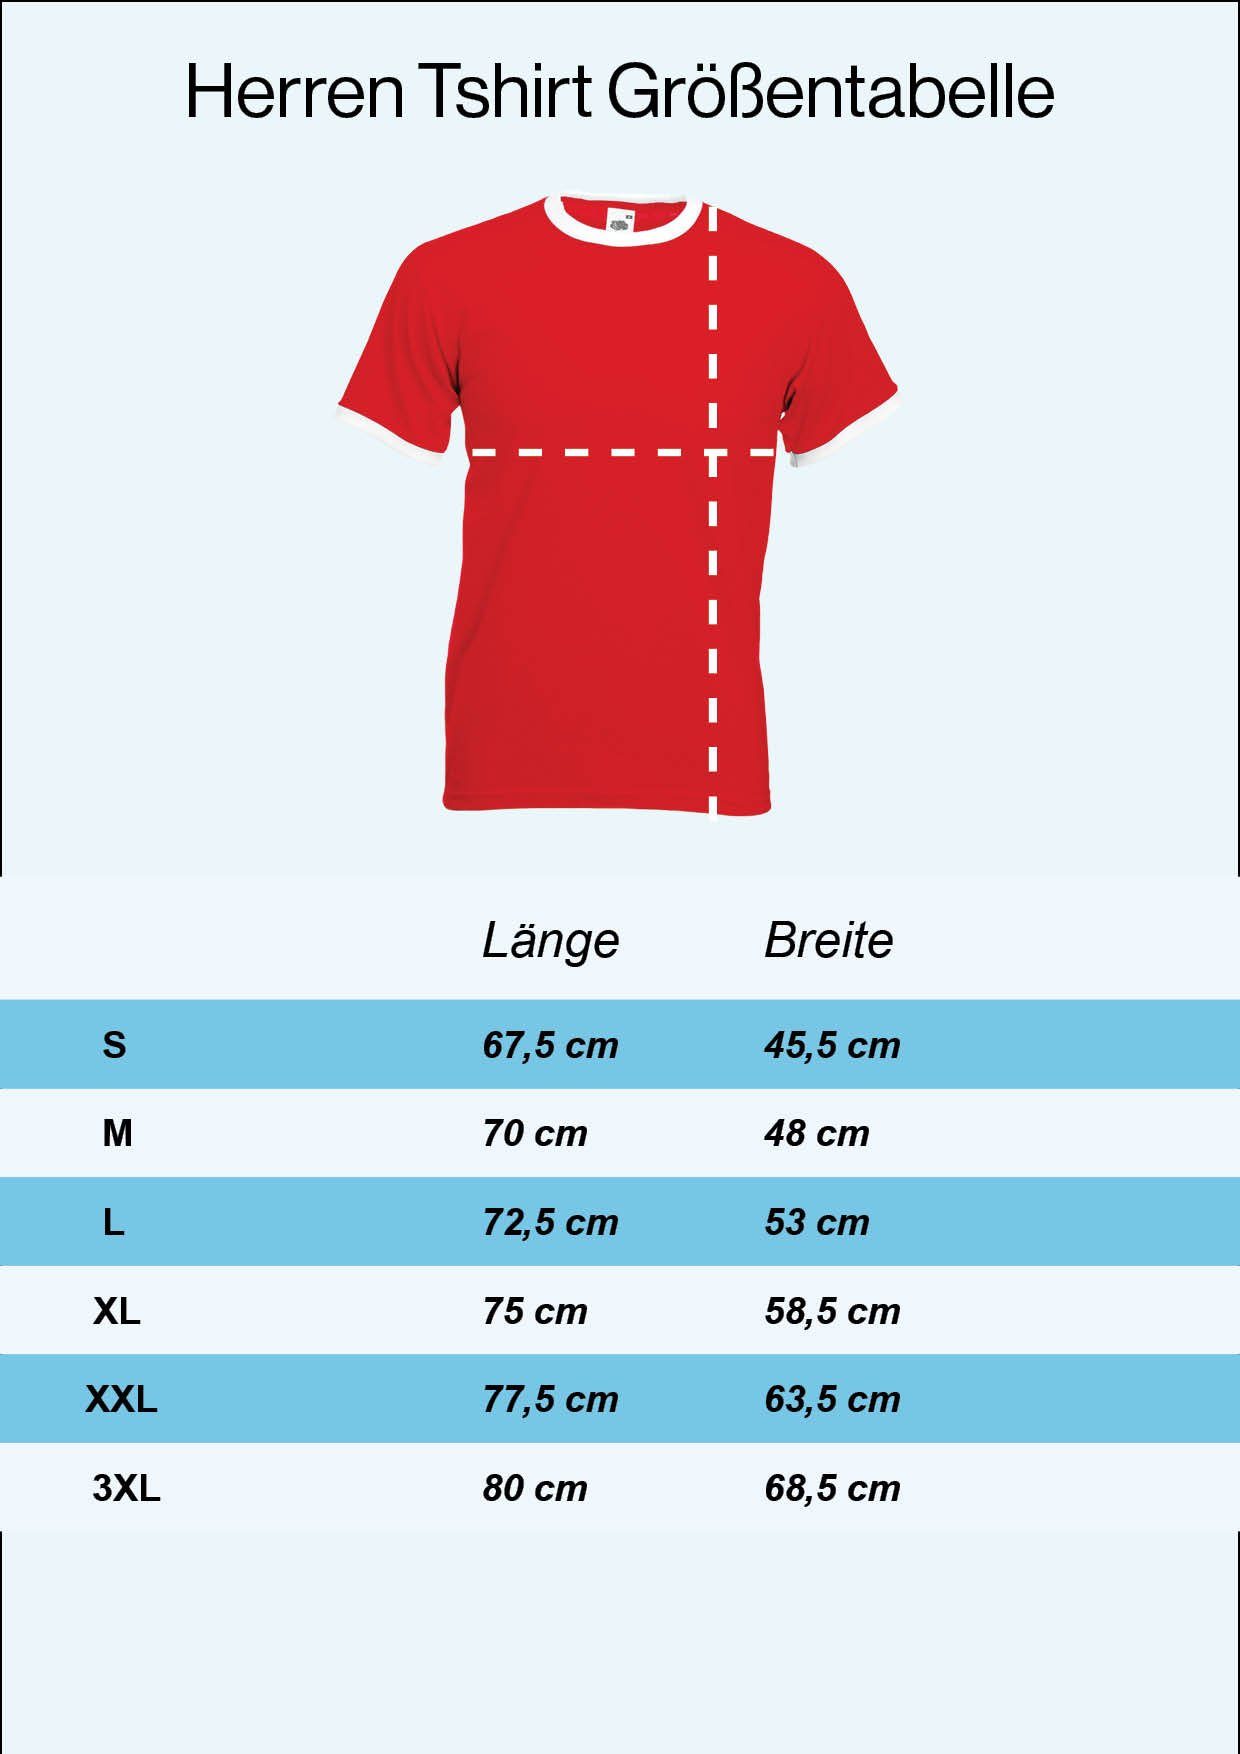 Youth Motiv im Herren T-Shirt mit Designz trendigem Fußball Look T-Shirt Trikot Marokko